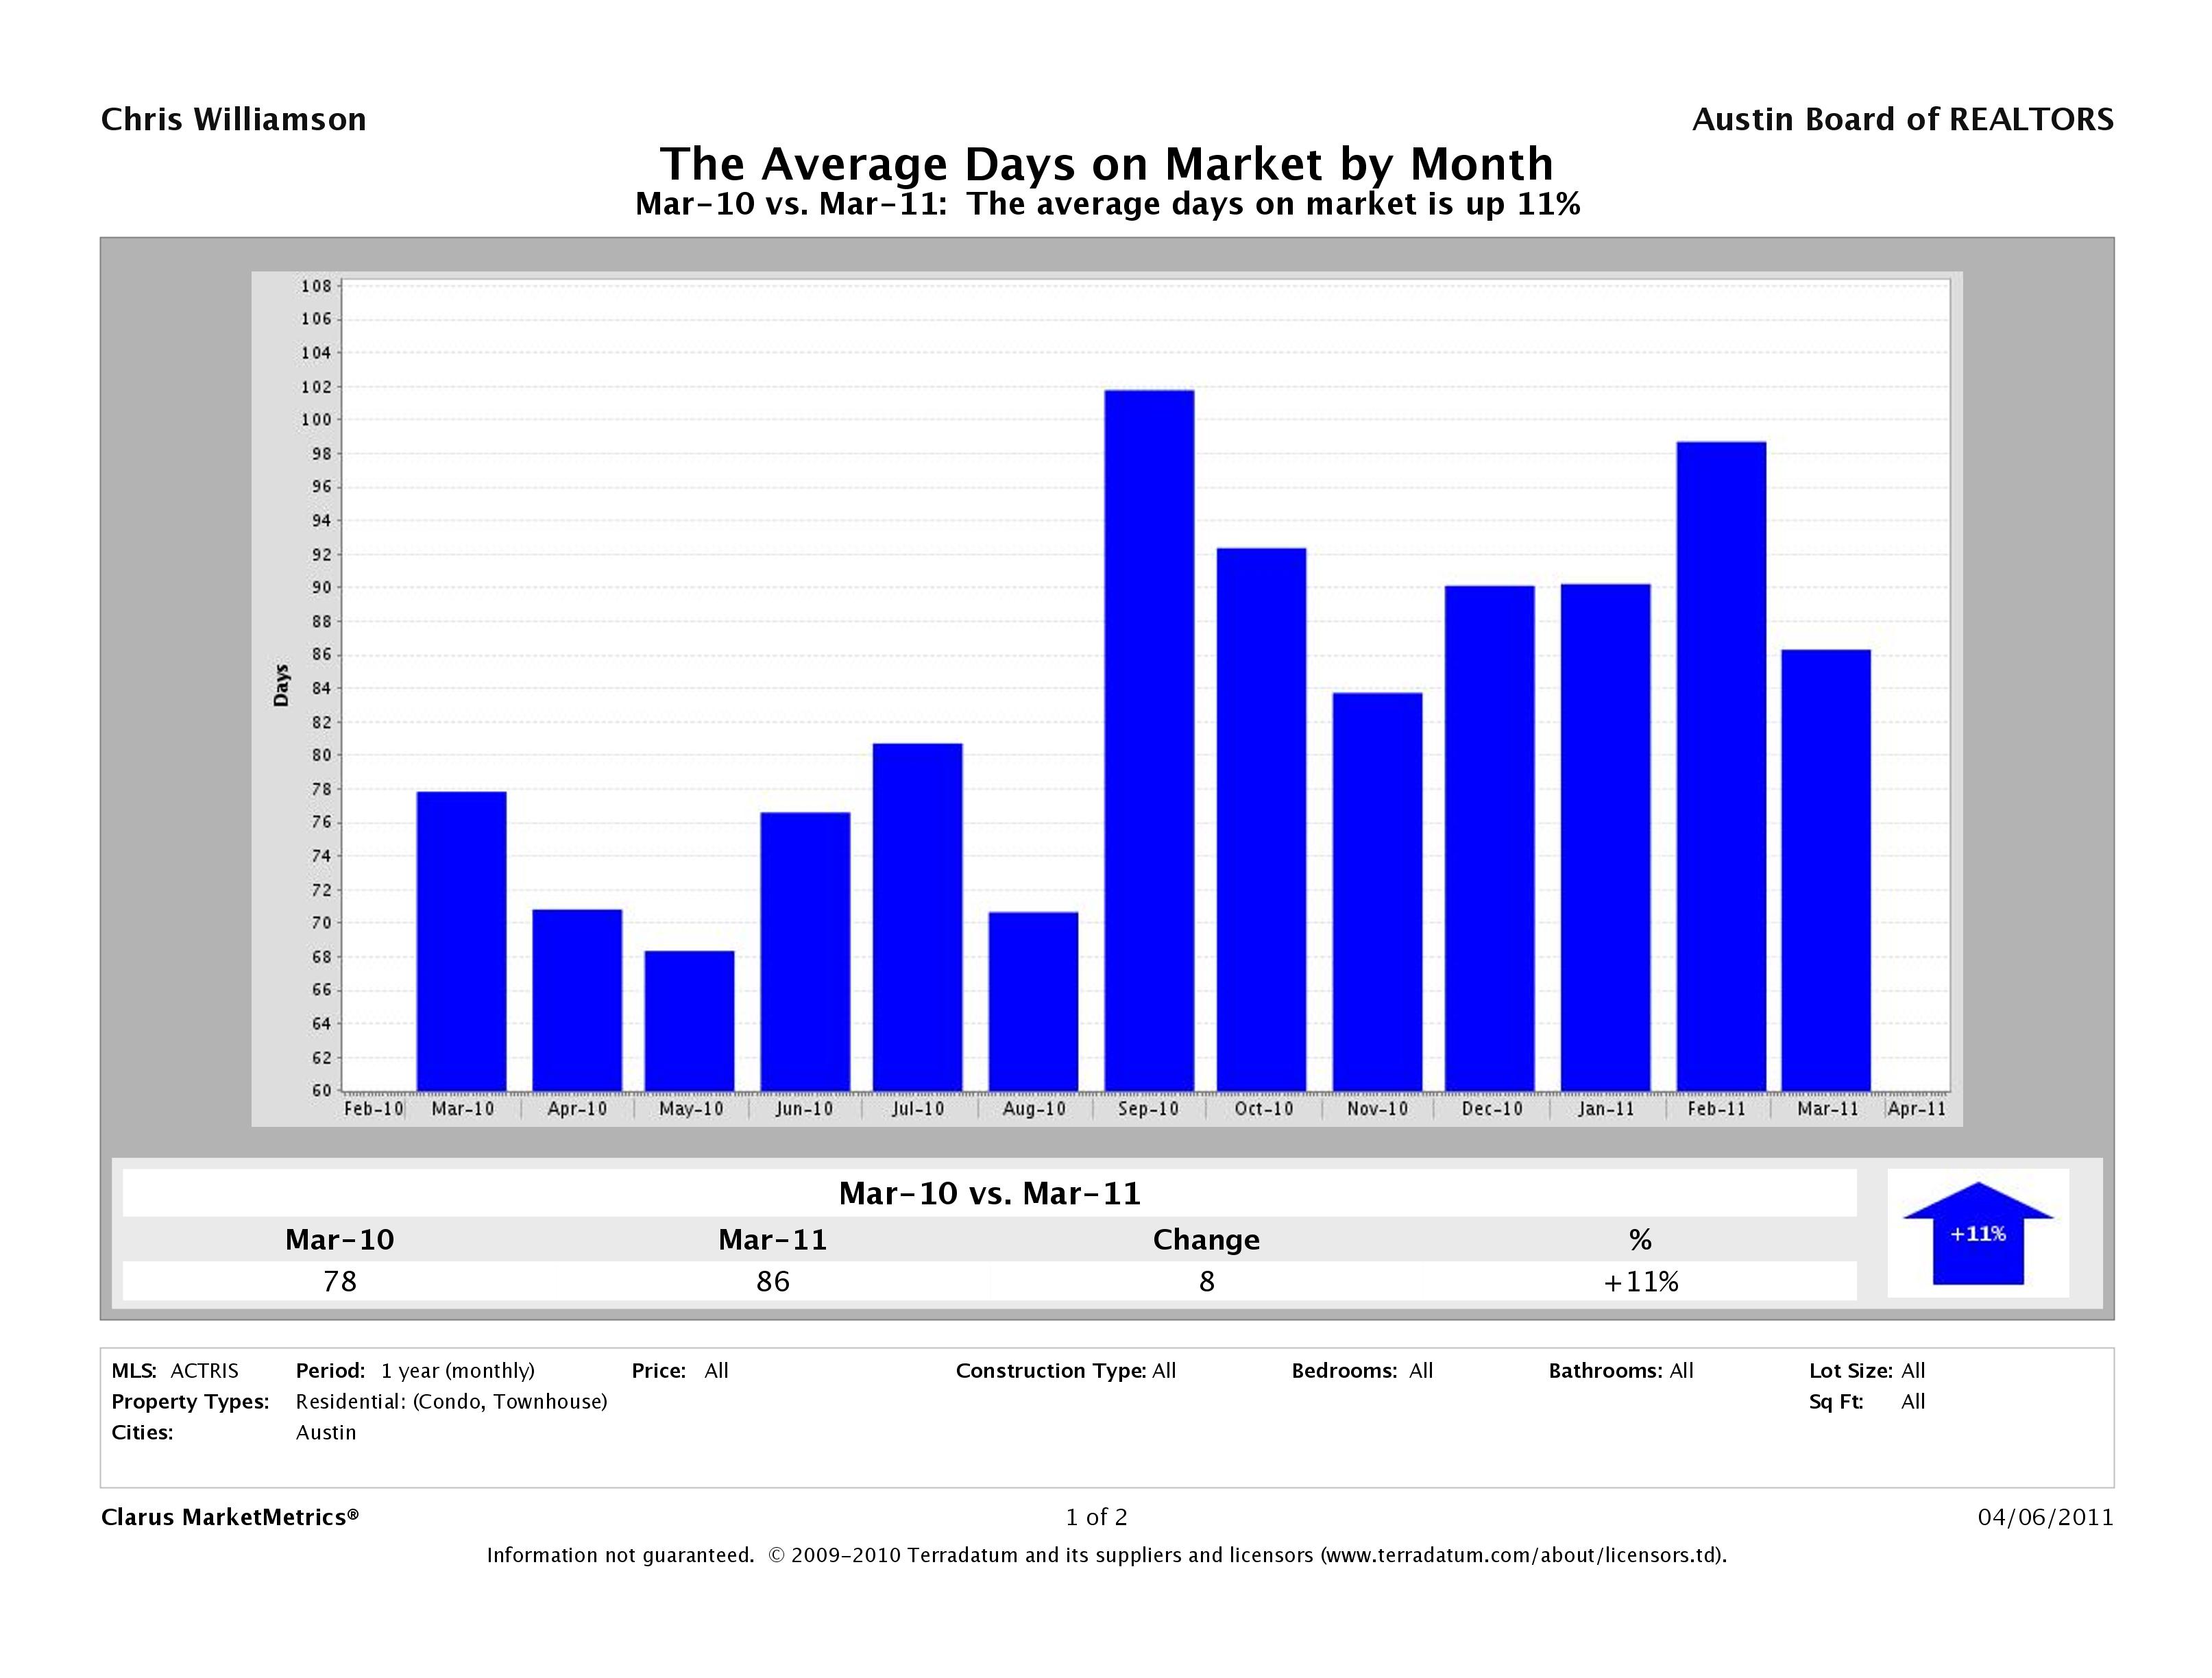 Austin average days on market condos march 2011